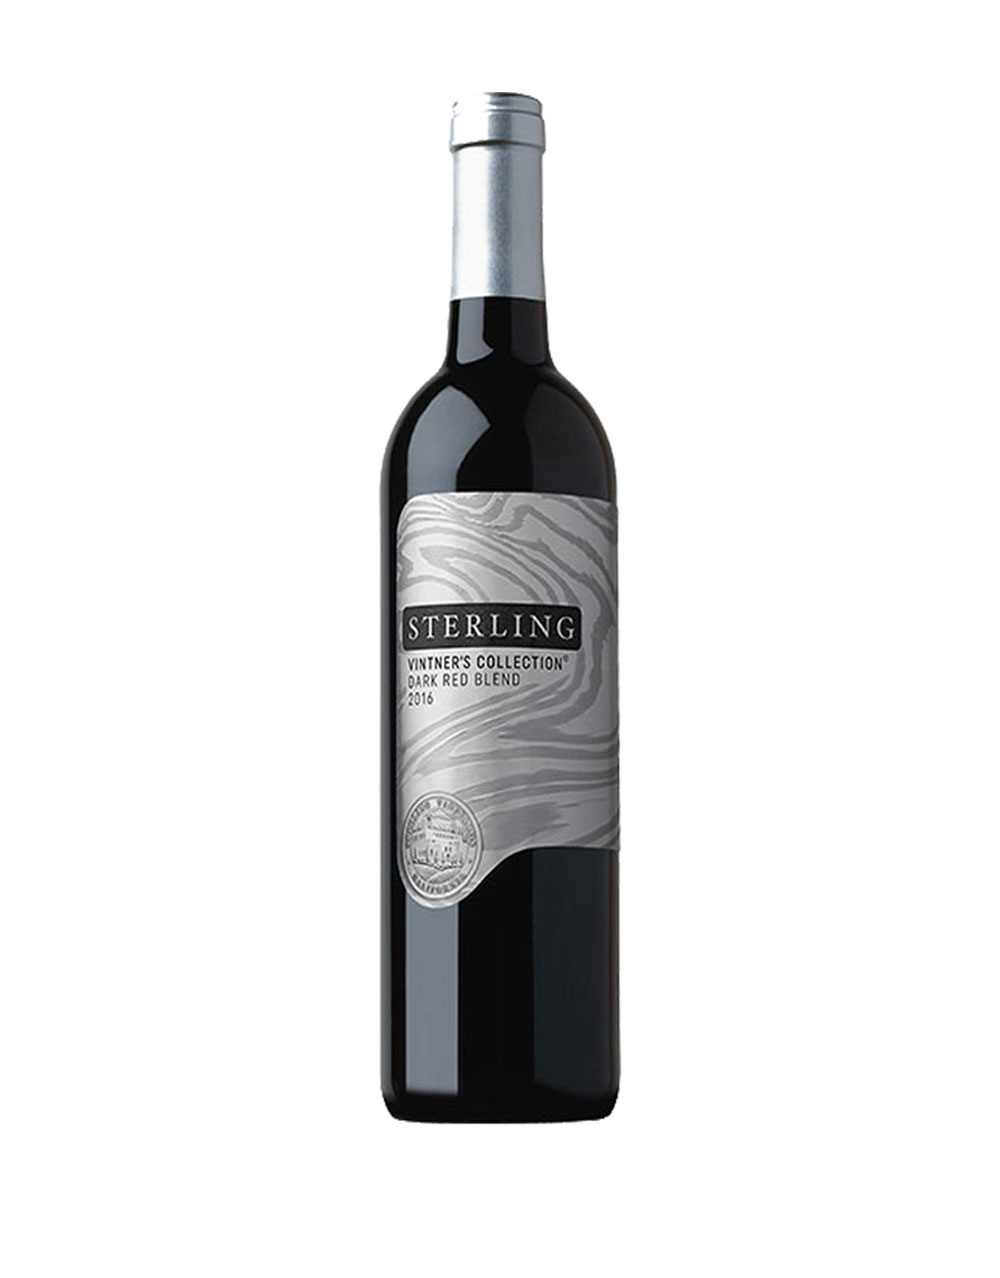 Sterling Vineyards Vintner's Collection 2016 Dark Red Blend Napa Valley